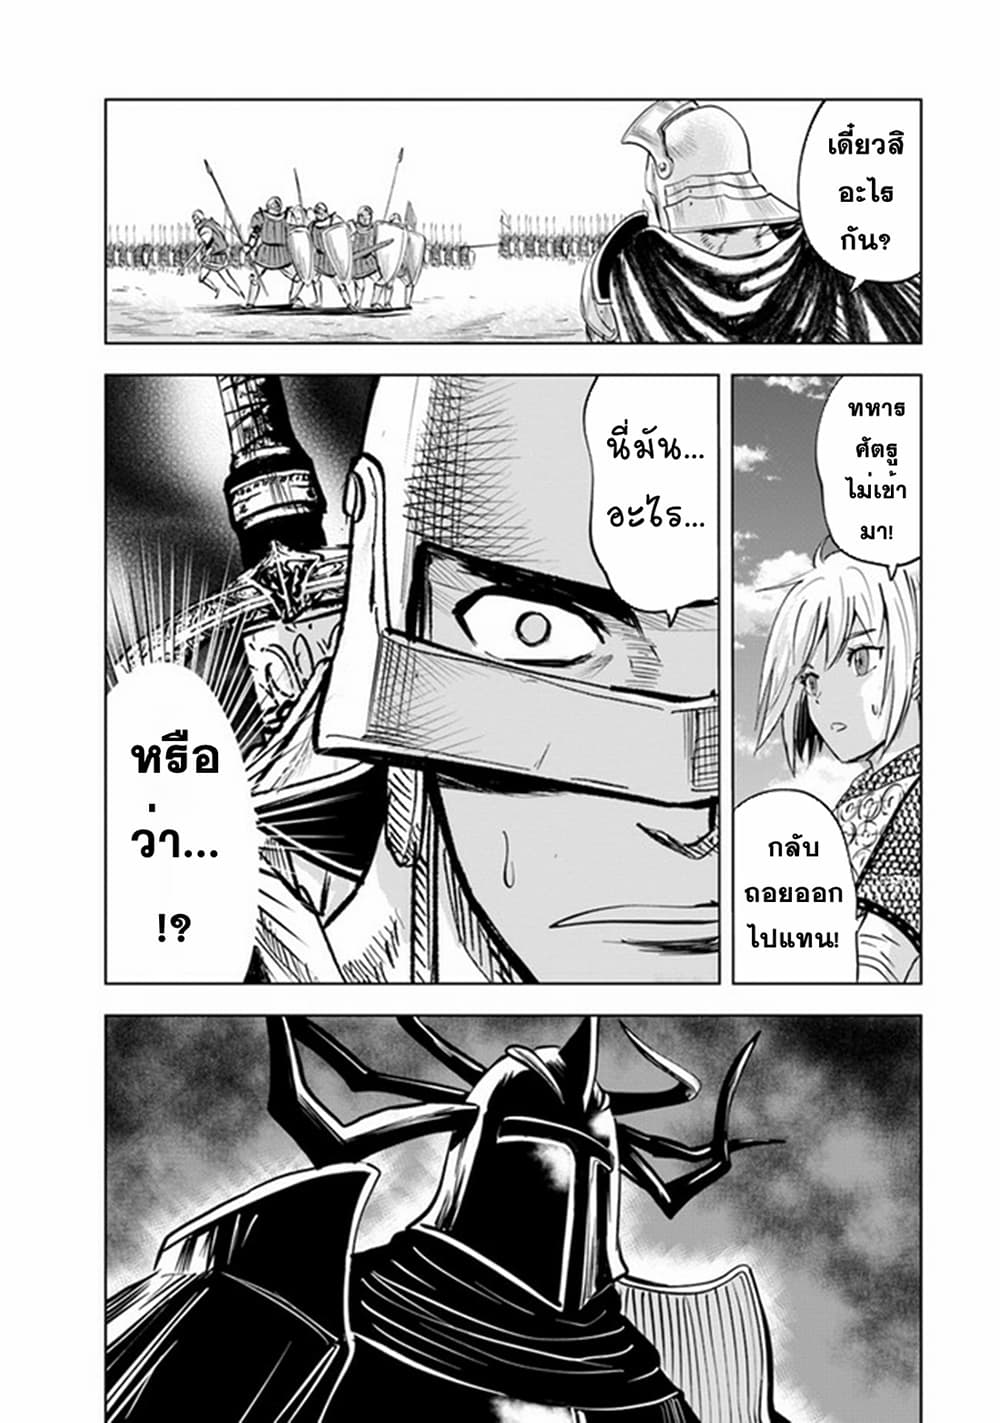 Oukoku e Tsuzuku Michi dorei Kenshi no Nariagari Eiyutan (Haaremu Raifu) - Road to the Kingdom Slave Swordsman the Rise of Heroes - Harem Life 48-48